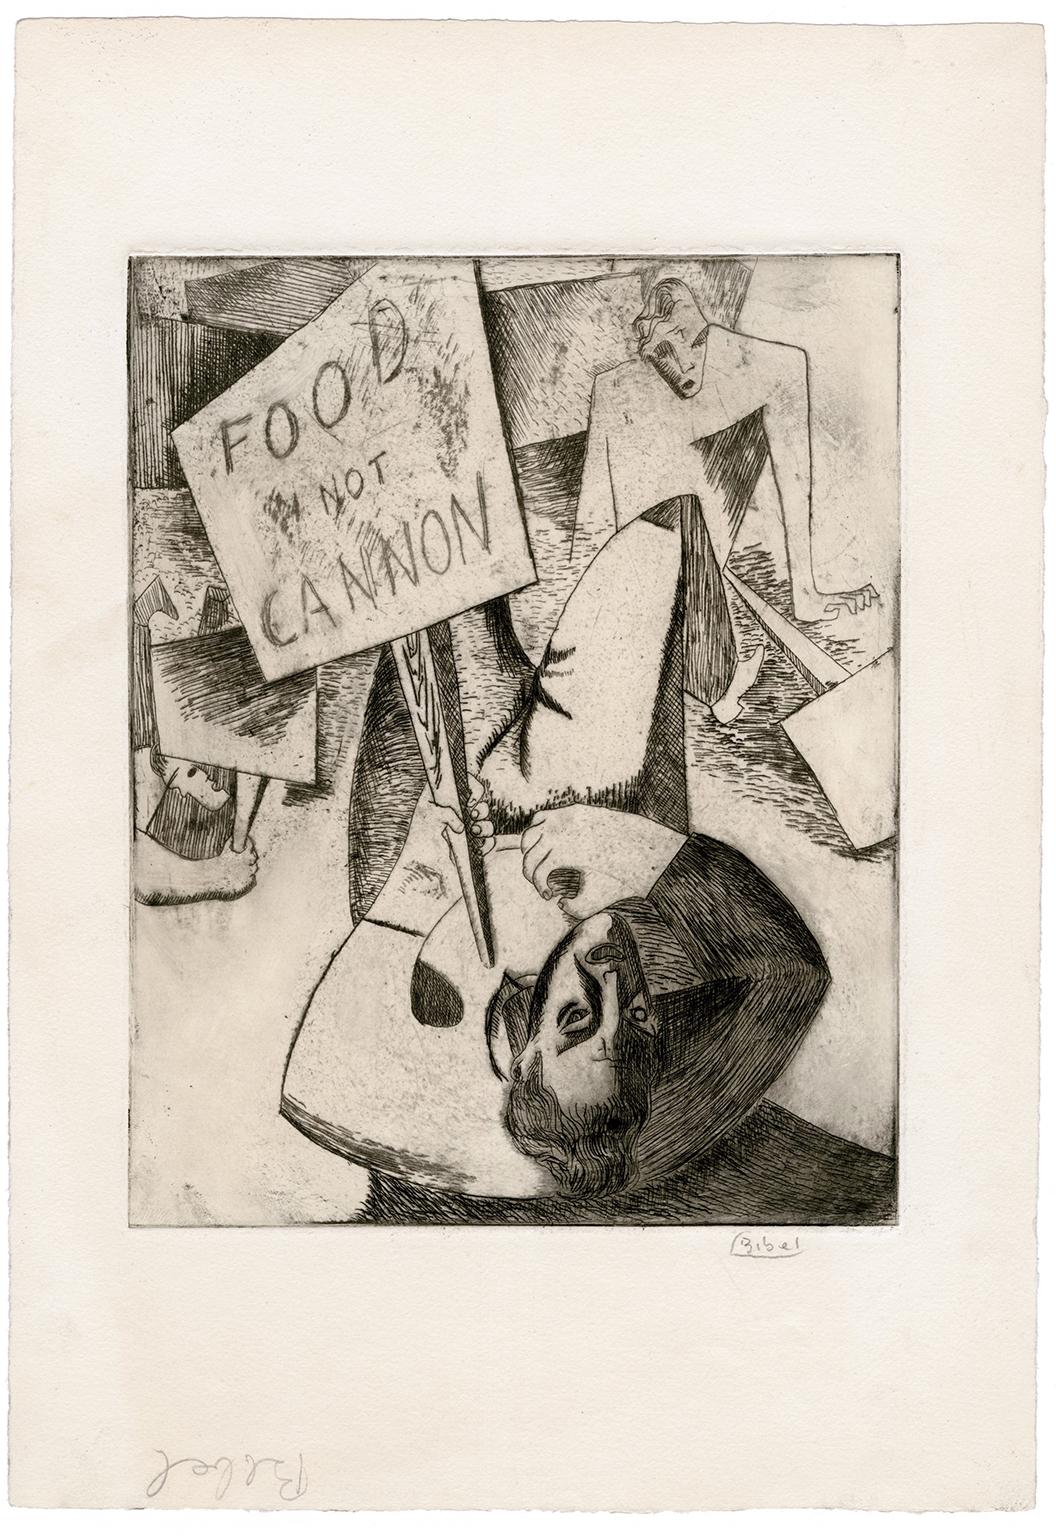 'Food Not Cannon' - seltenes modernistisches Werk der WPA  Soziales Gewissen – Print von Leon Bibel